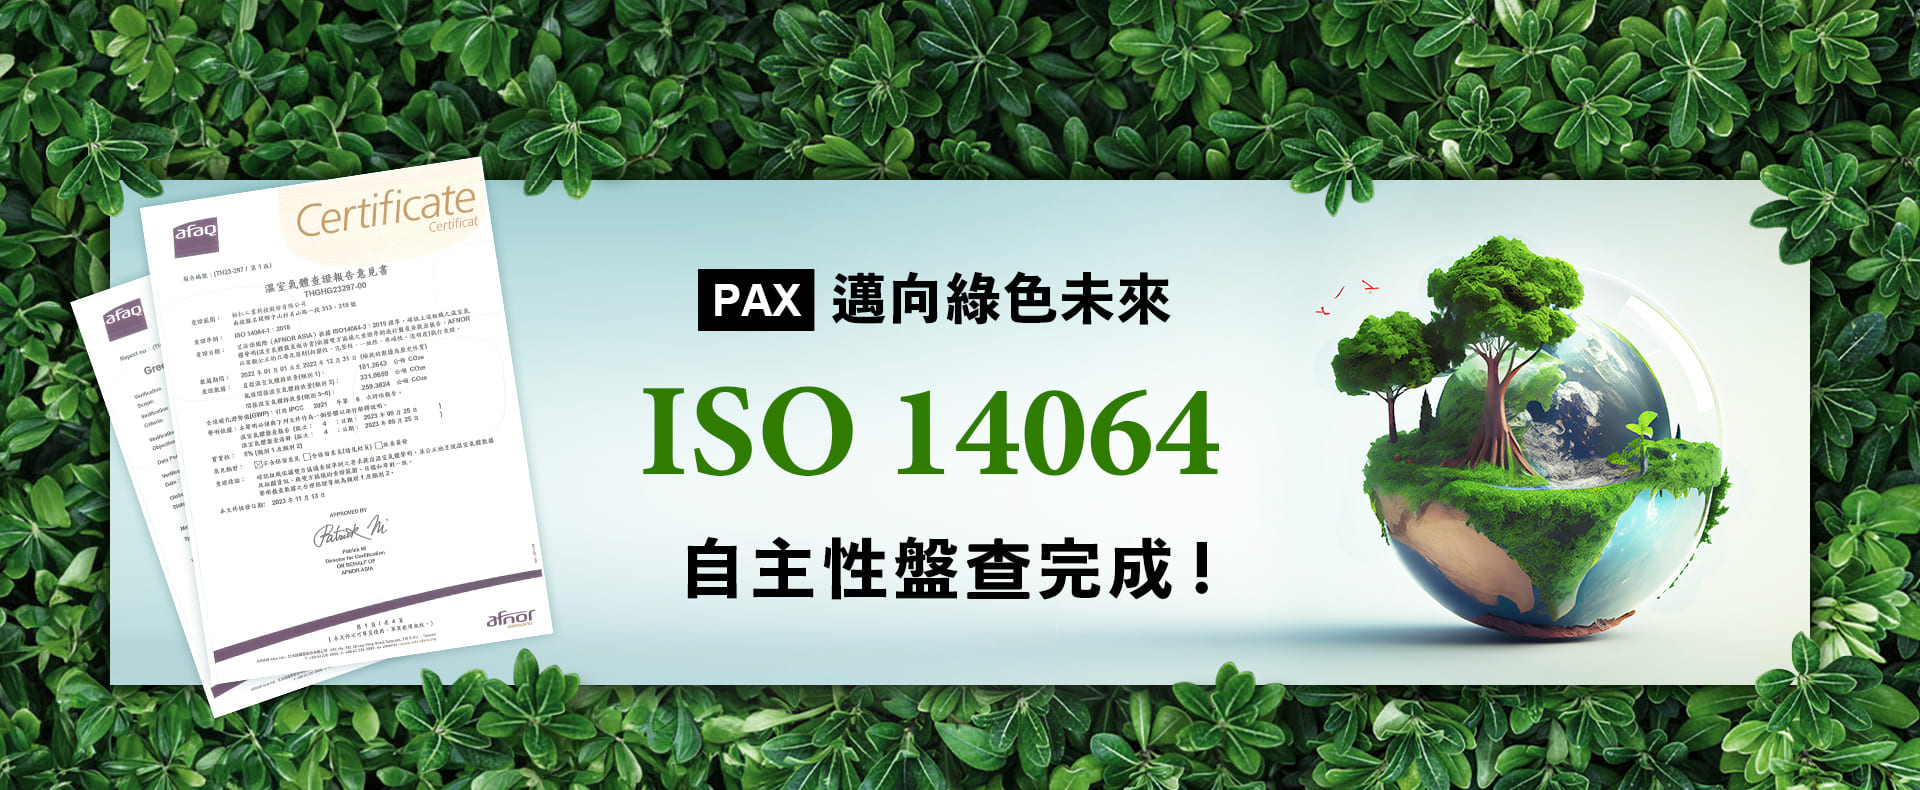 ISO14064溫室氣體盤查